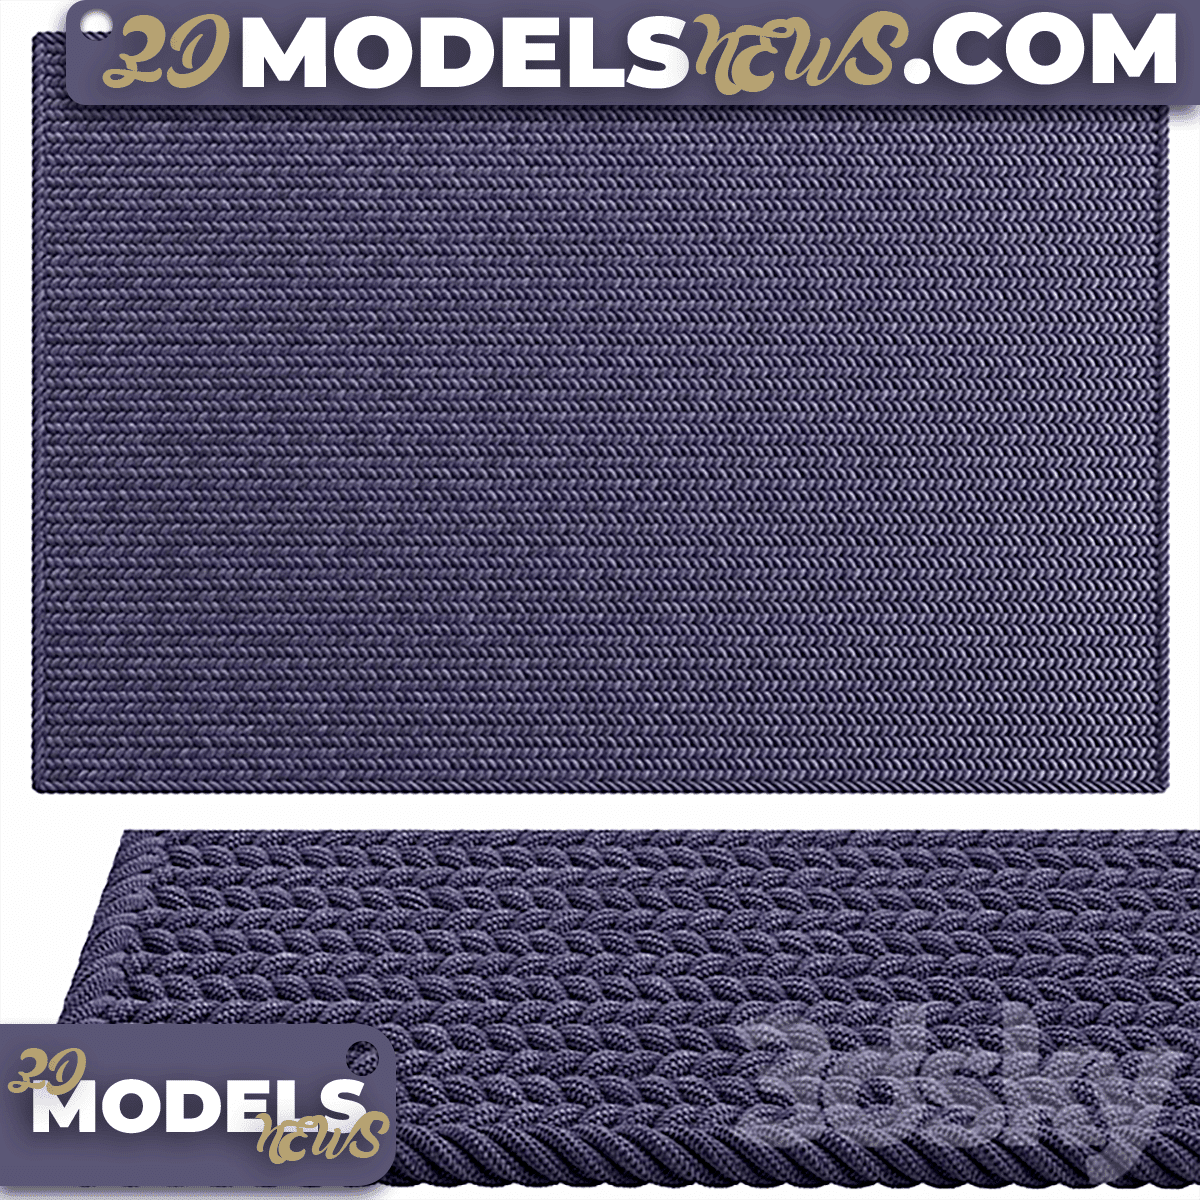 Woven Carpet Model 1